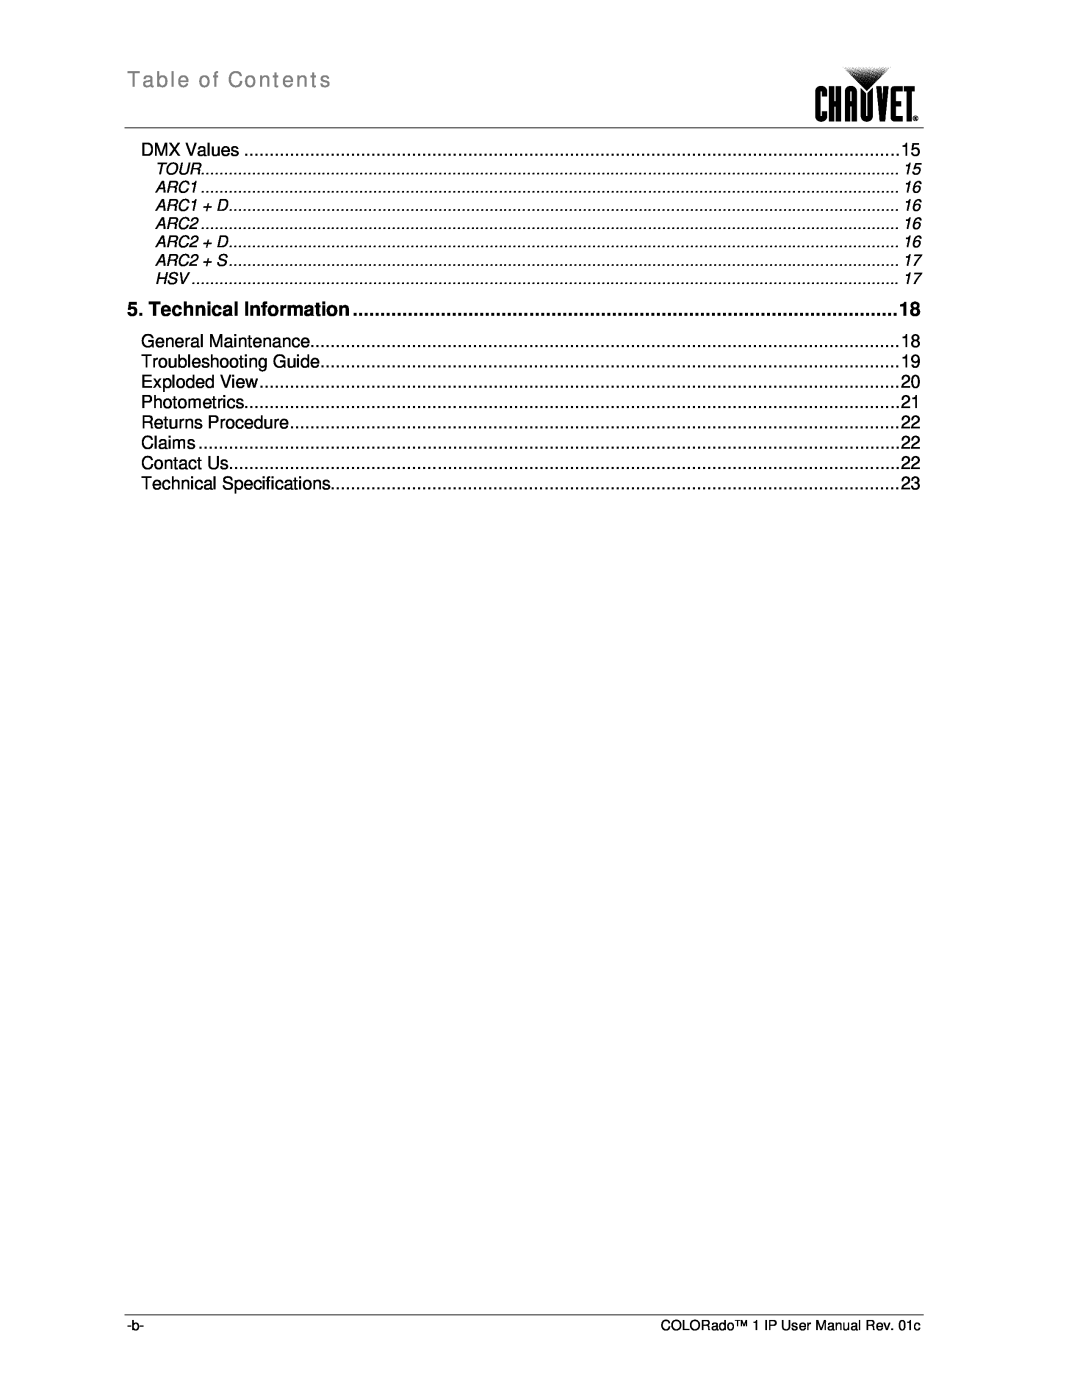 Chauvet color ado1ip user manual Table of Contents, Technical Information, Tour, ARC1 + D, ARC2 + D, ARC2 + S 